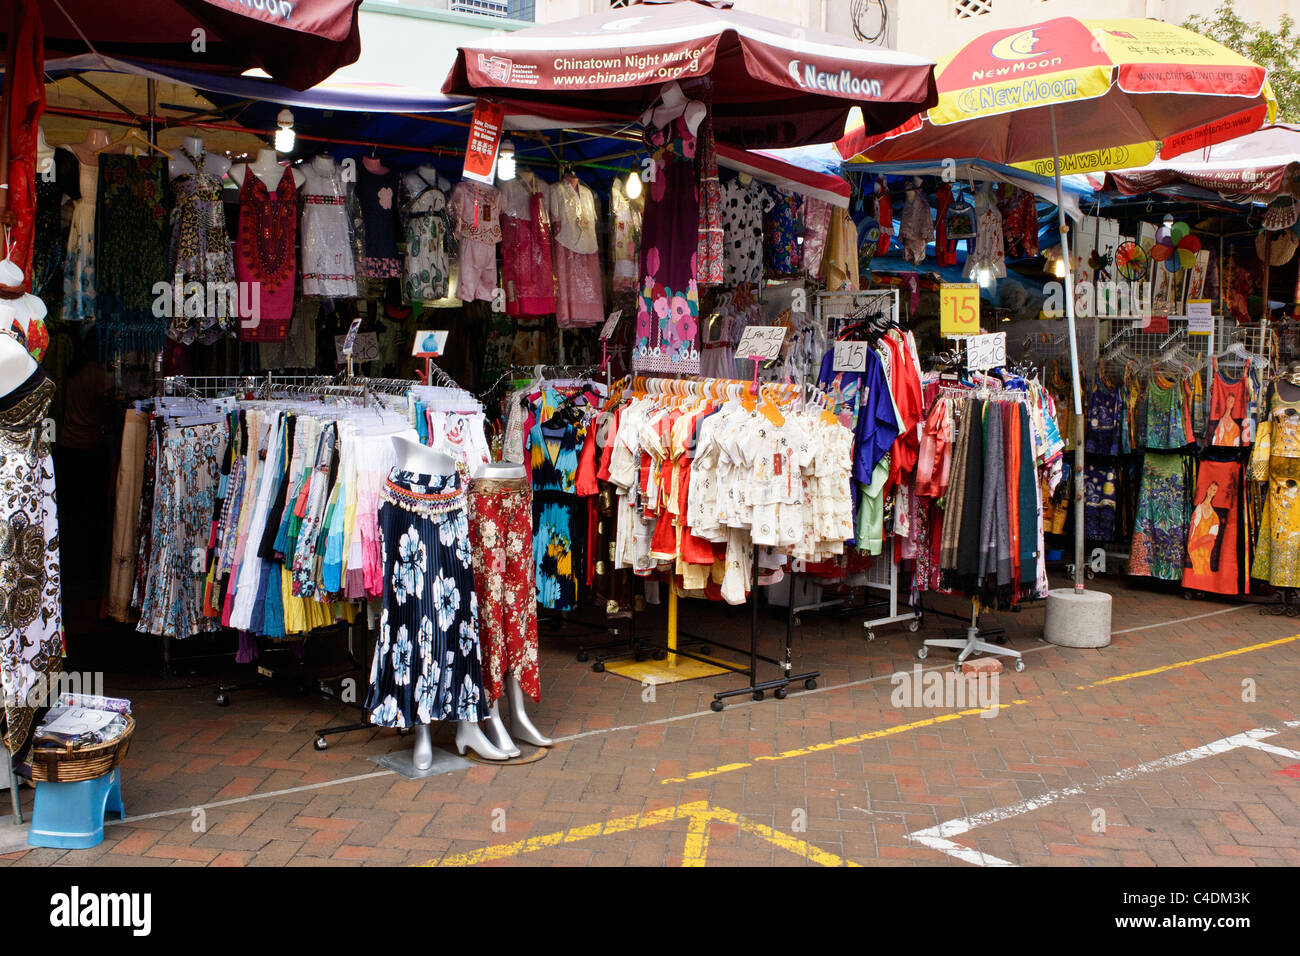 Kleidung auf dem Display in Singapur Chinatown Markt zu verkaufen. Stockfoto